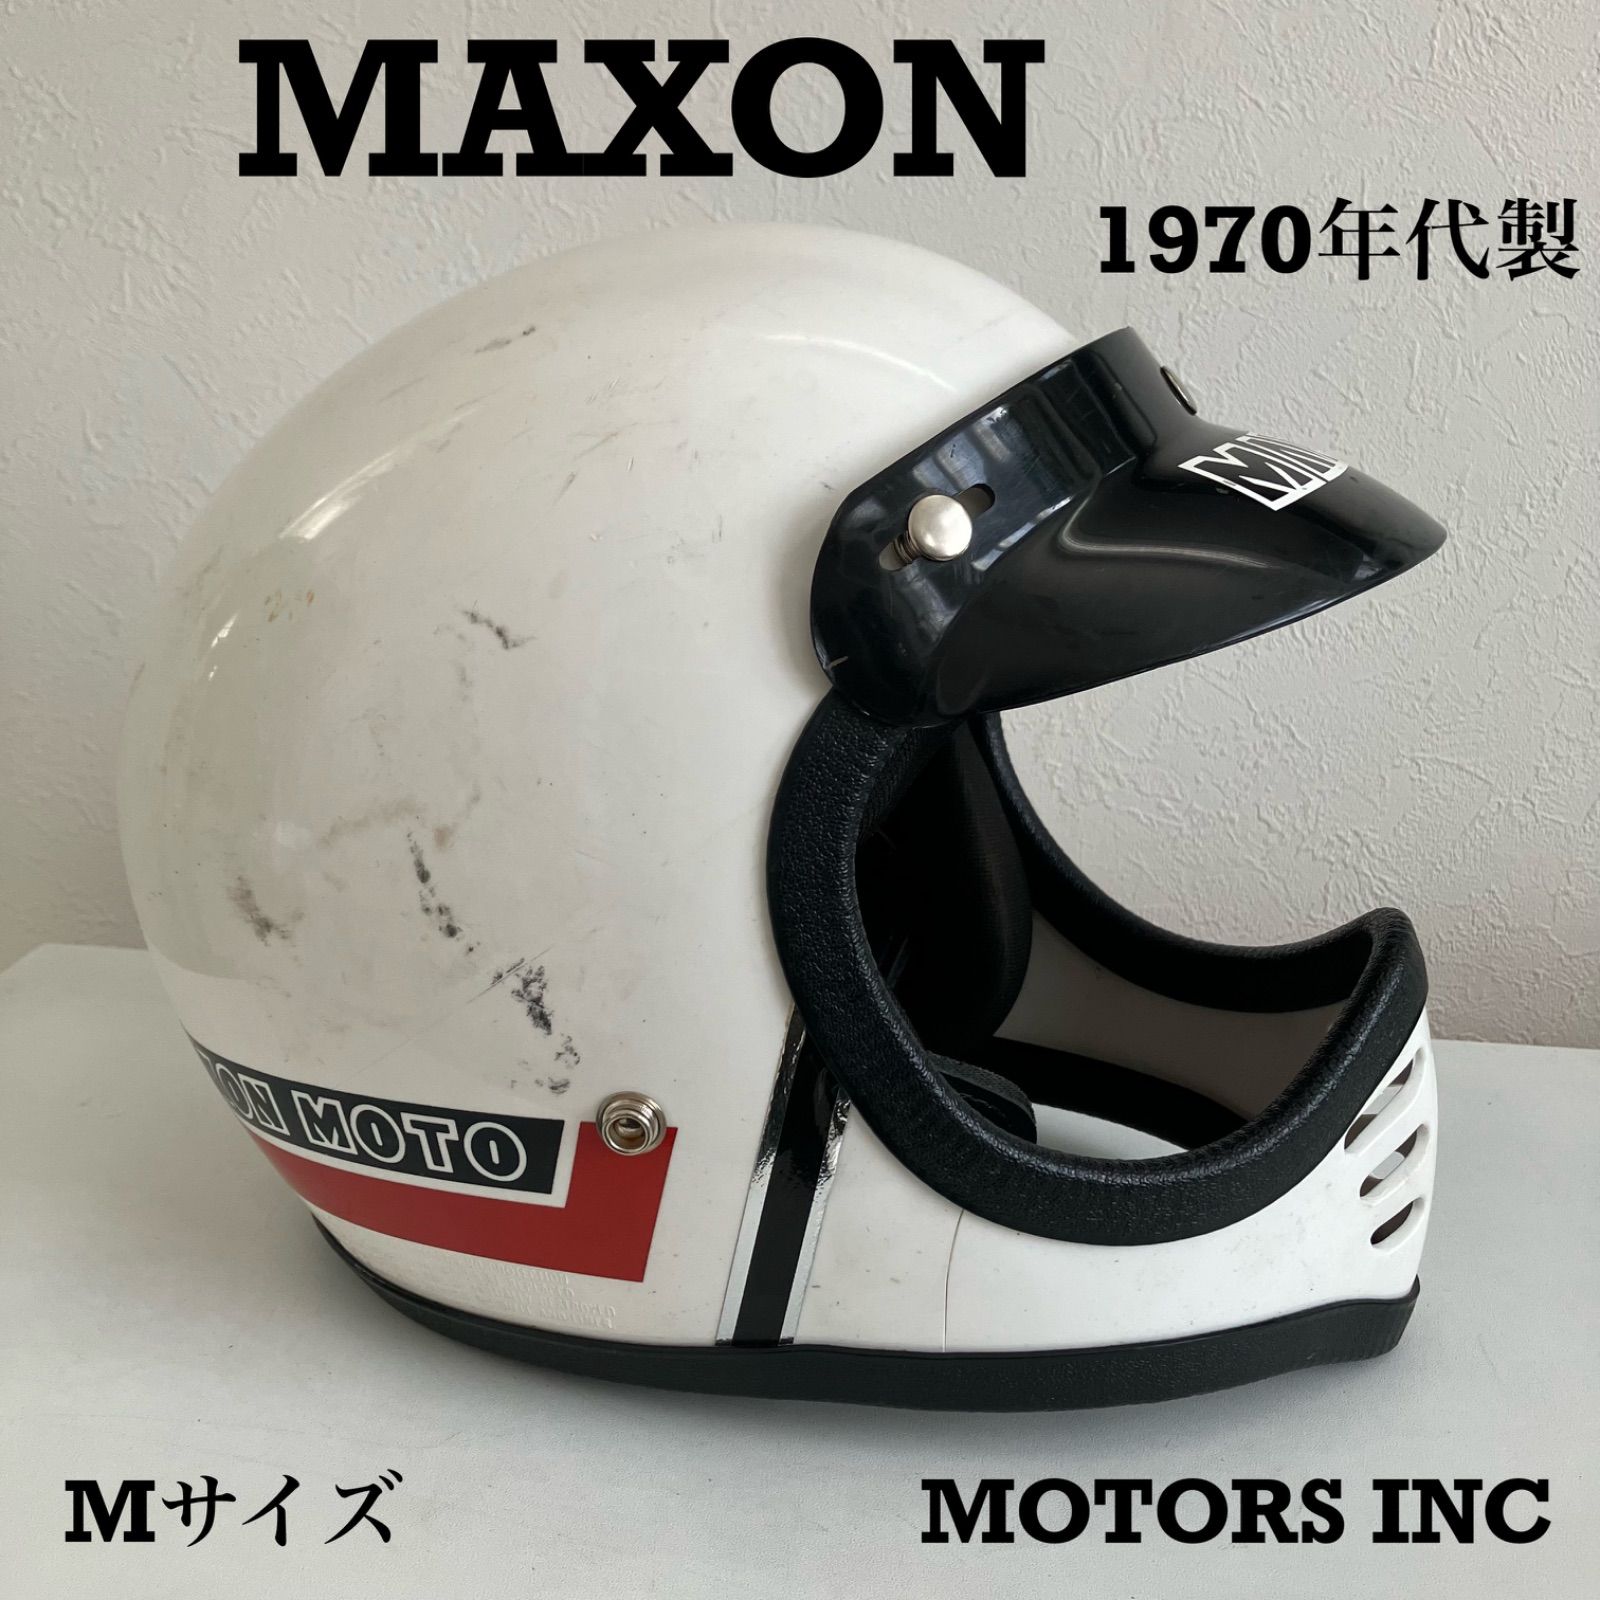 ビンテージヘルメット★MAXON Mサイズ 70年代 フルフェイス モトクロス モトヘル バイカー バイク 白 札幌 旧車 マクソン MOTORS  INC